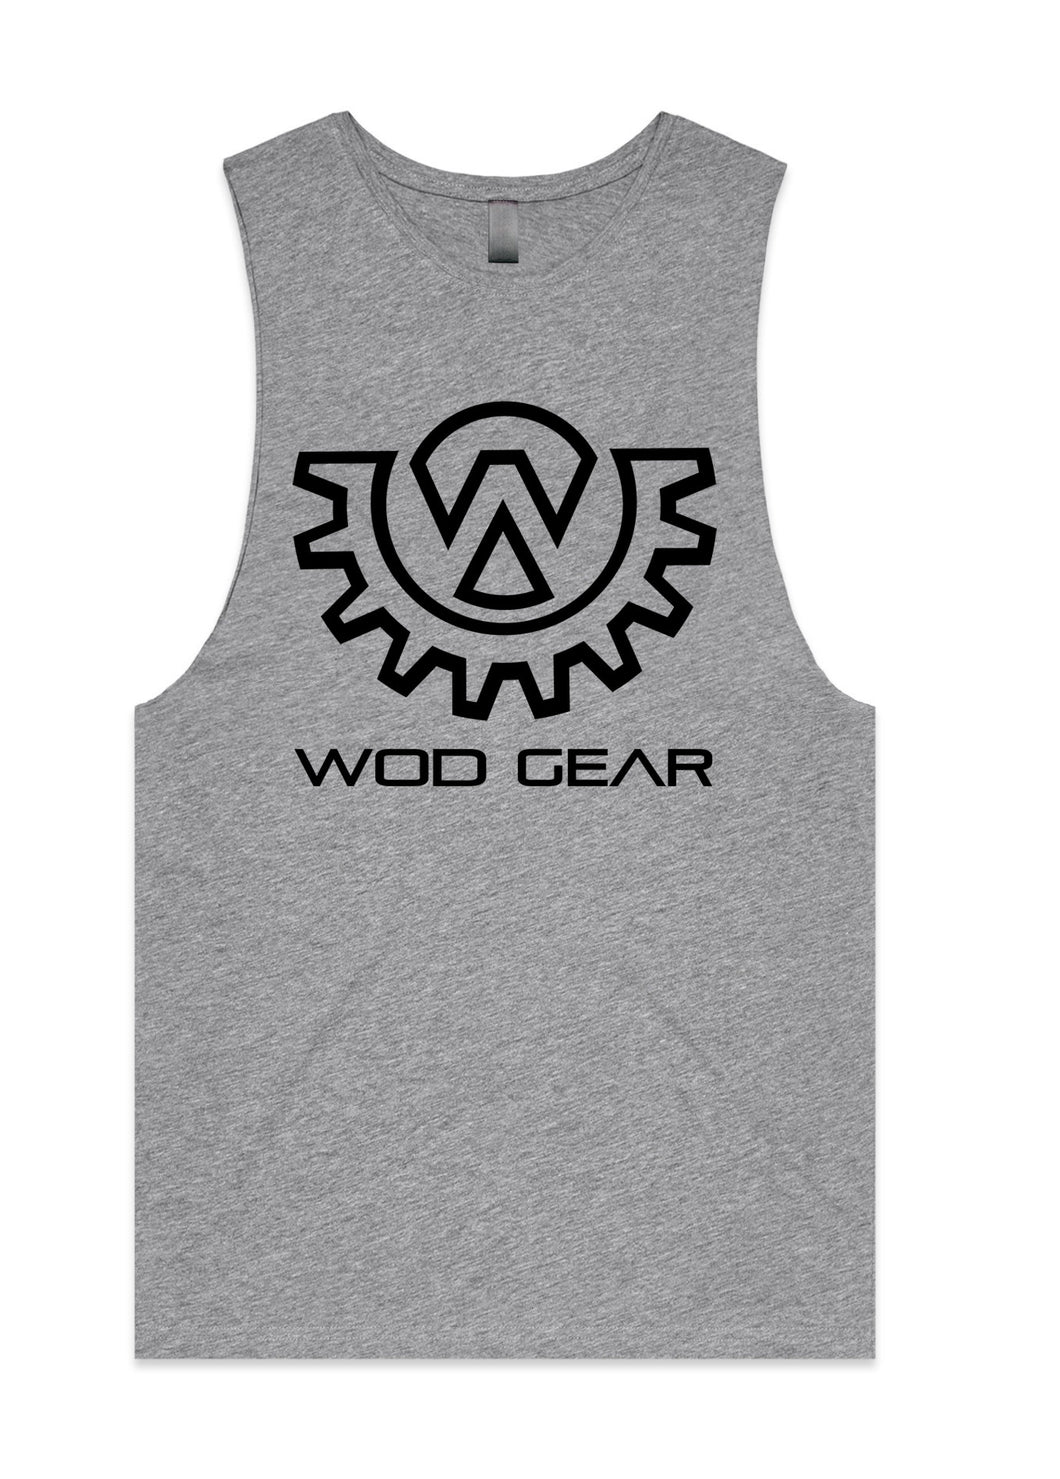 Wod Gear Men's Muscle Tank Grey/Black